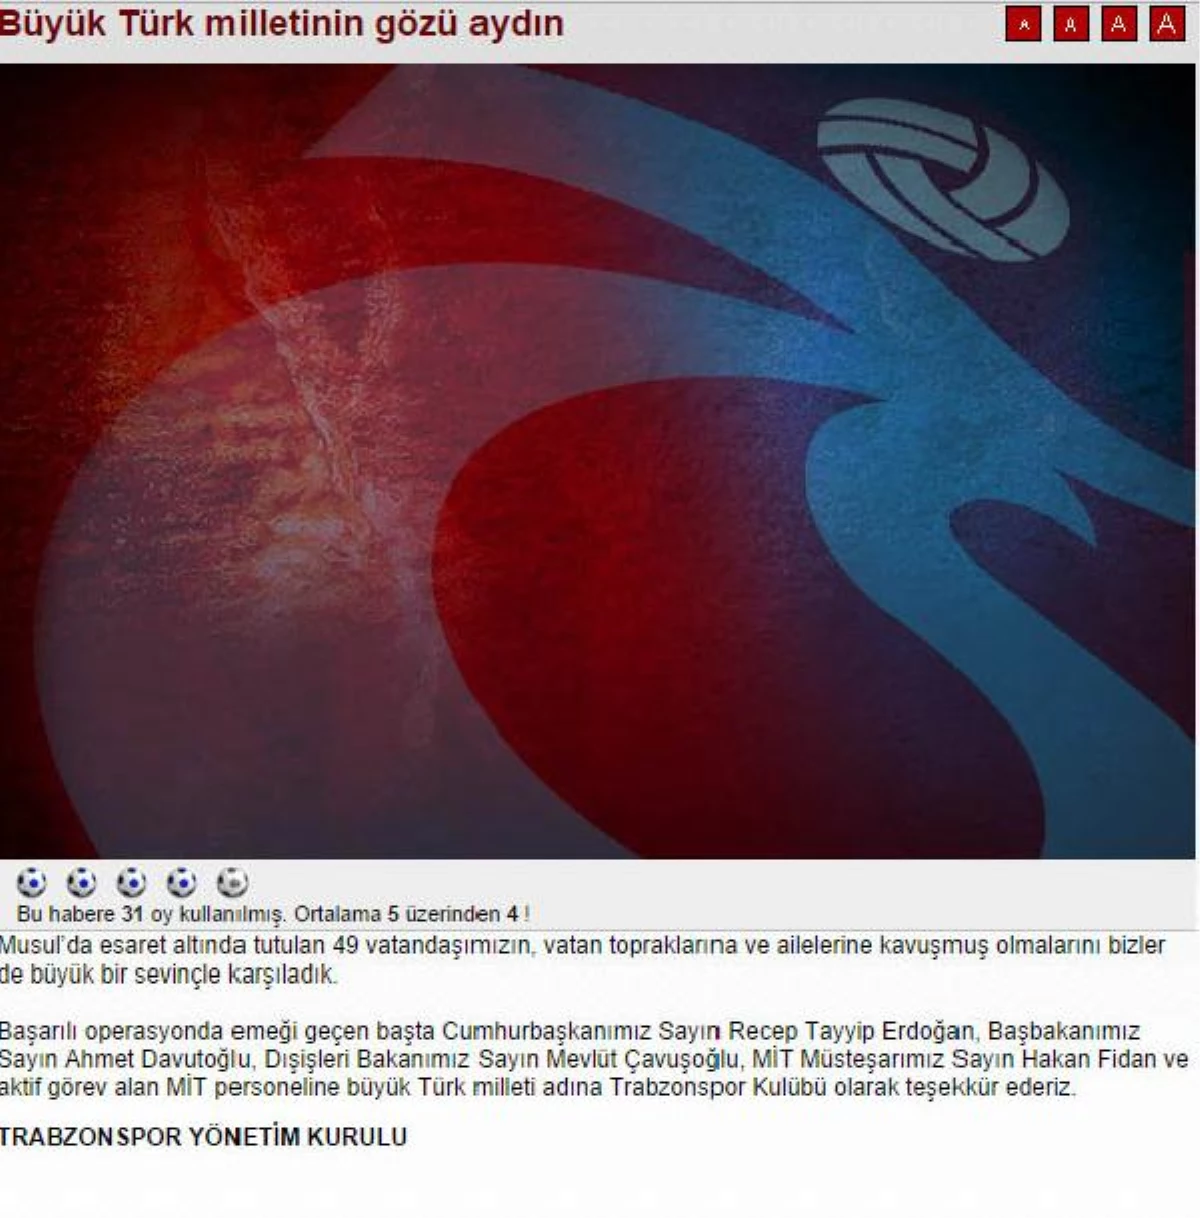 Trabzonspor\'dan Rehine Operasyonu Açıklaması: Büyük Türk Milletinin Gözü Aydın